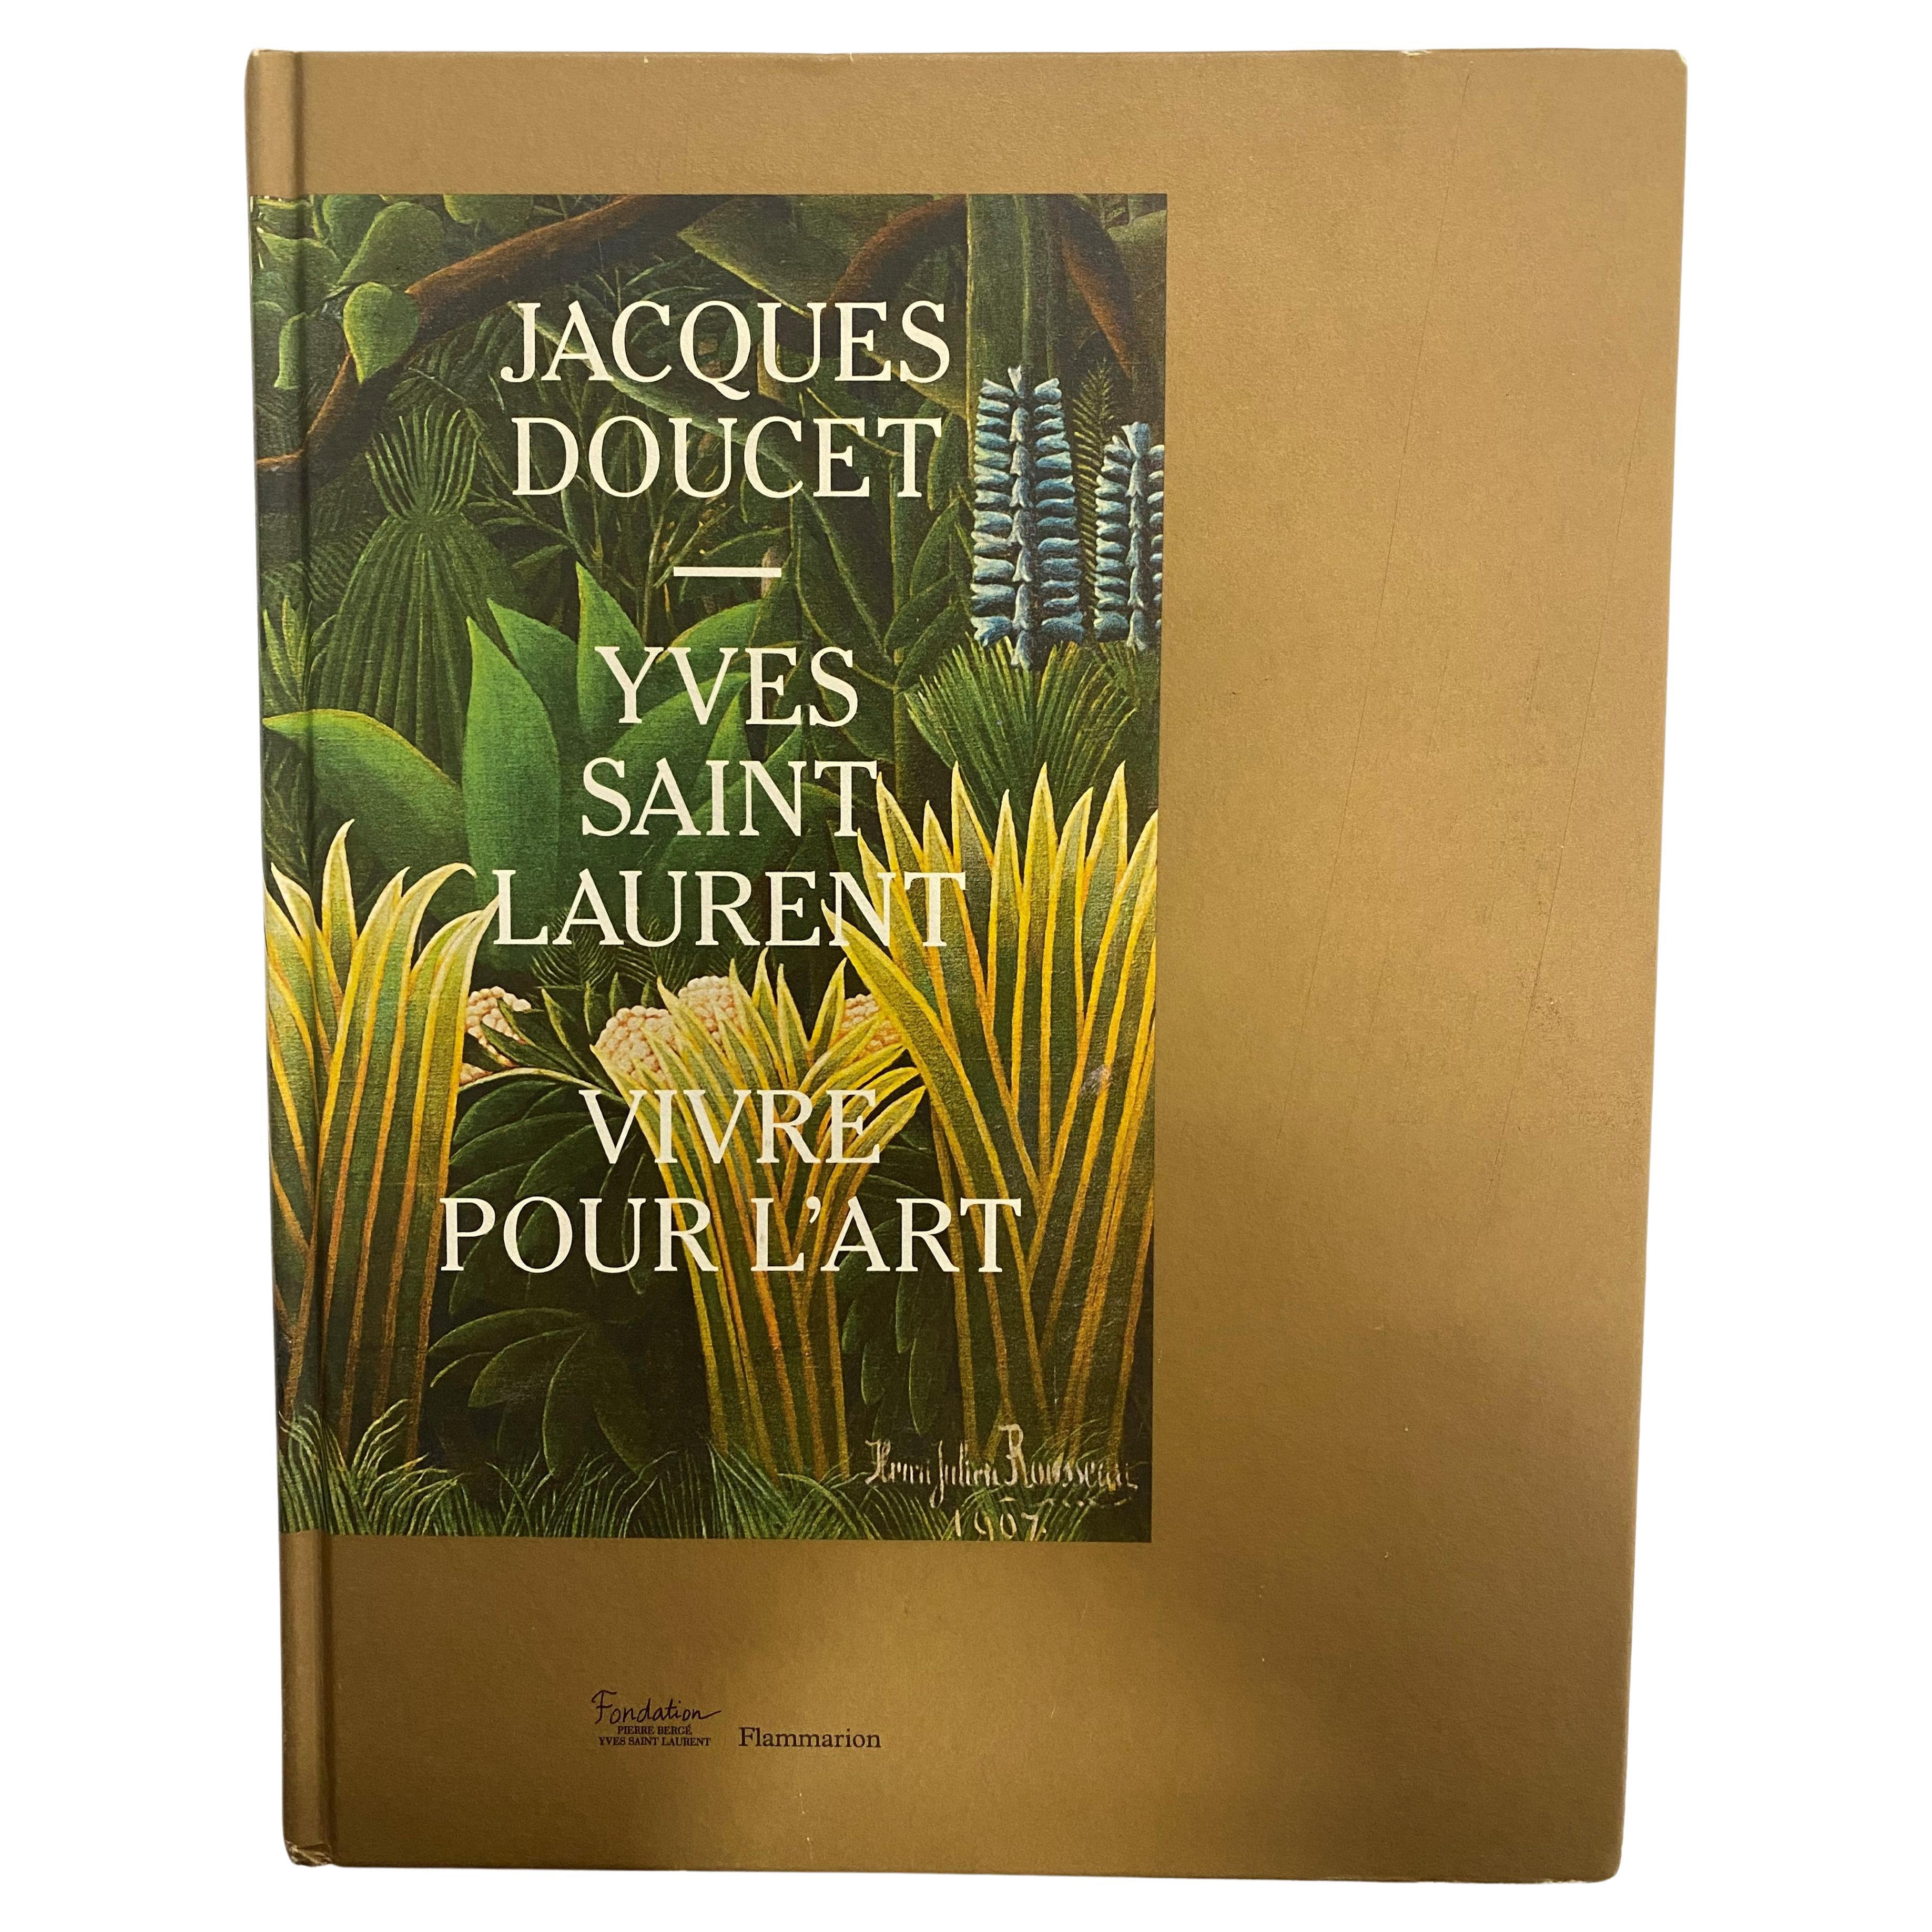 Jacques Doucet-Yves Saint Laurent: Vivre Pour L'Art (Book) For Sale